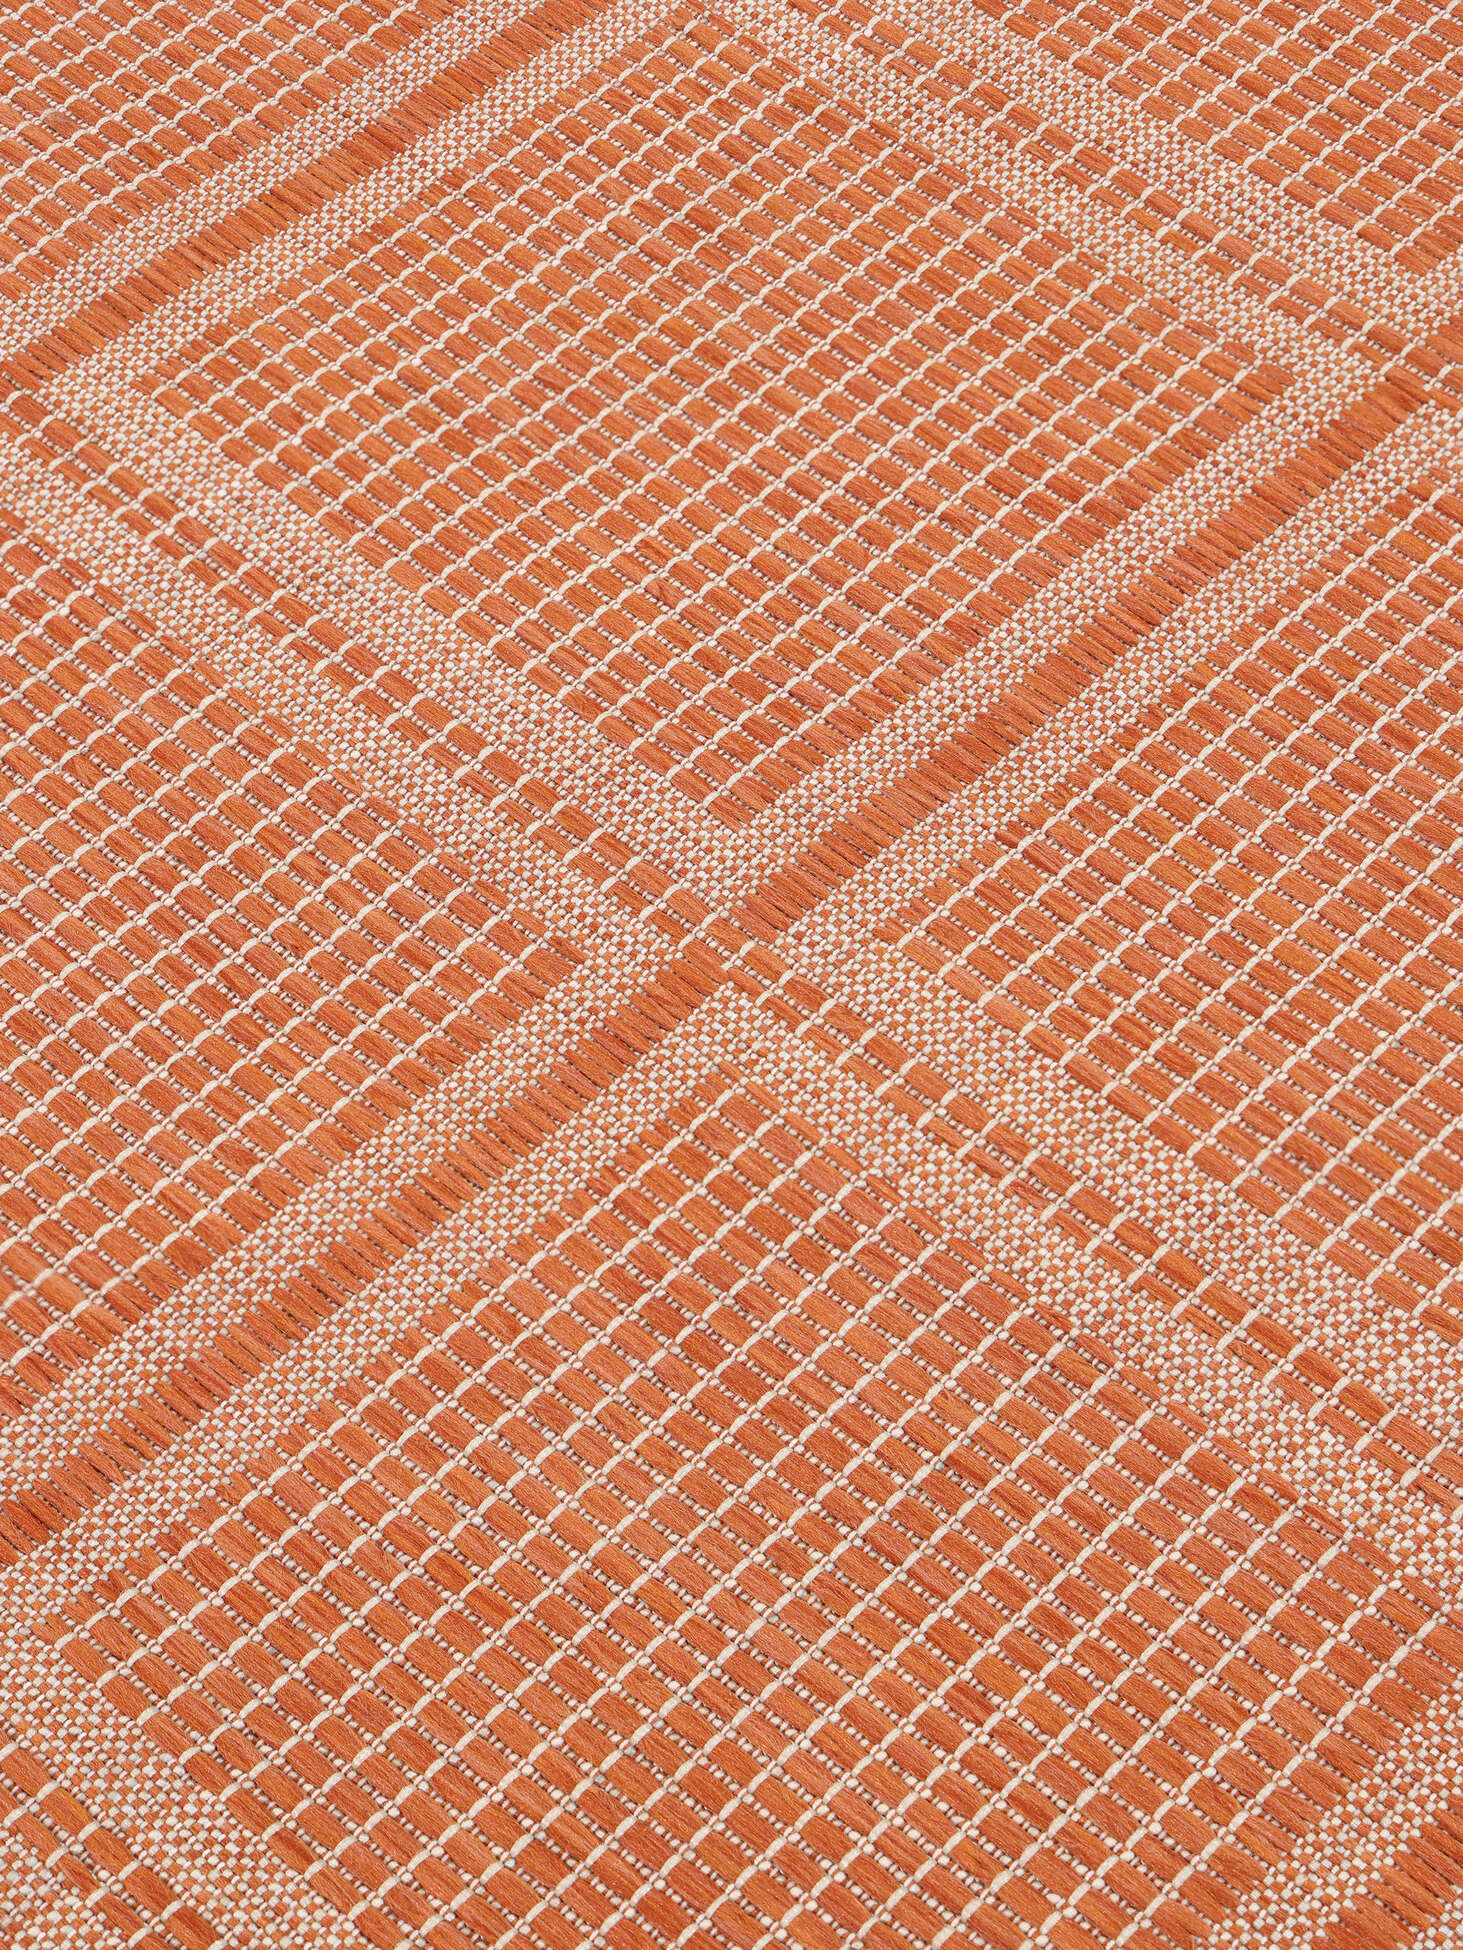 Tappeto moderno tinta unita arancione SIENNA ORANGE - Floorita SRL